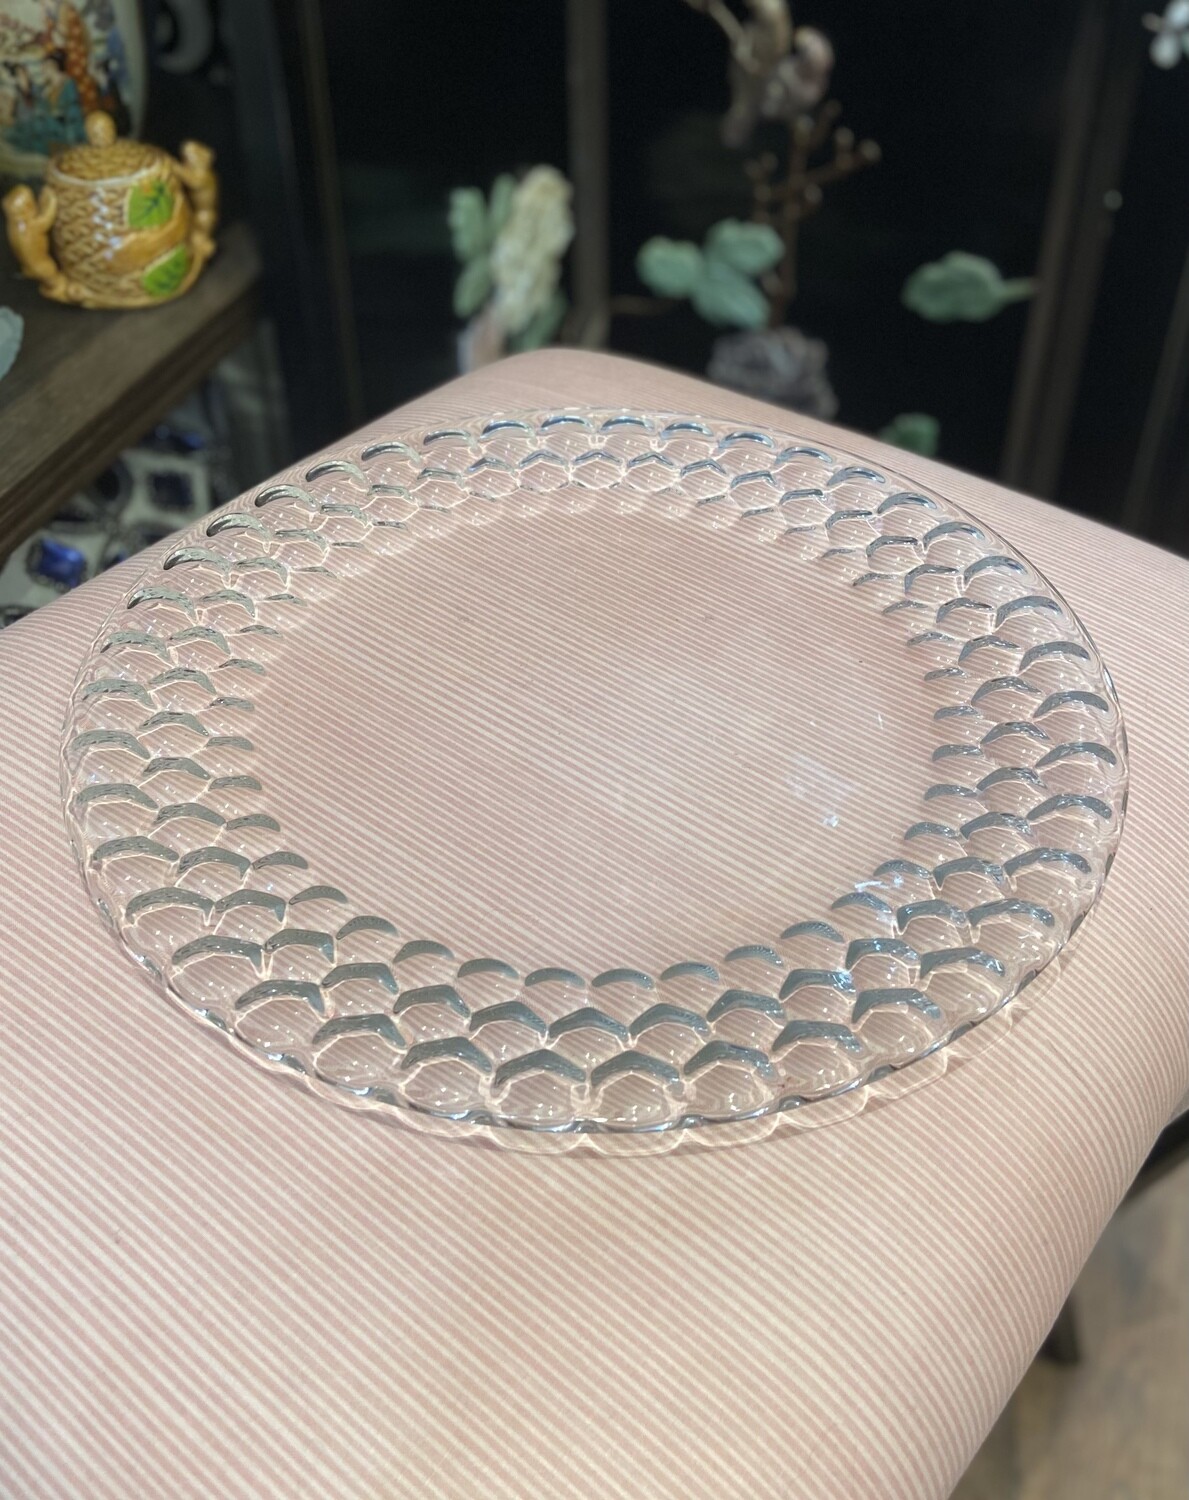 Dimple Bubble Design Serving Platter 12 1/2"